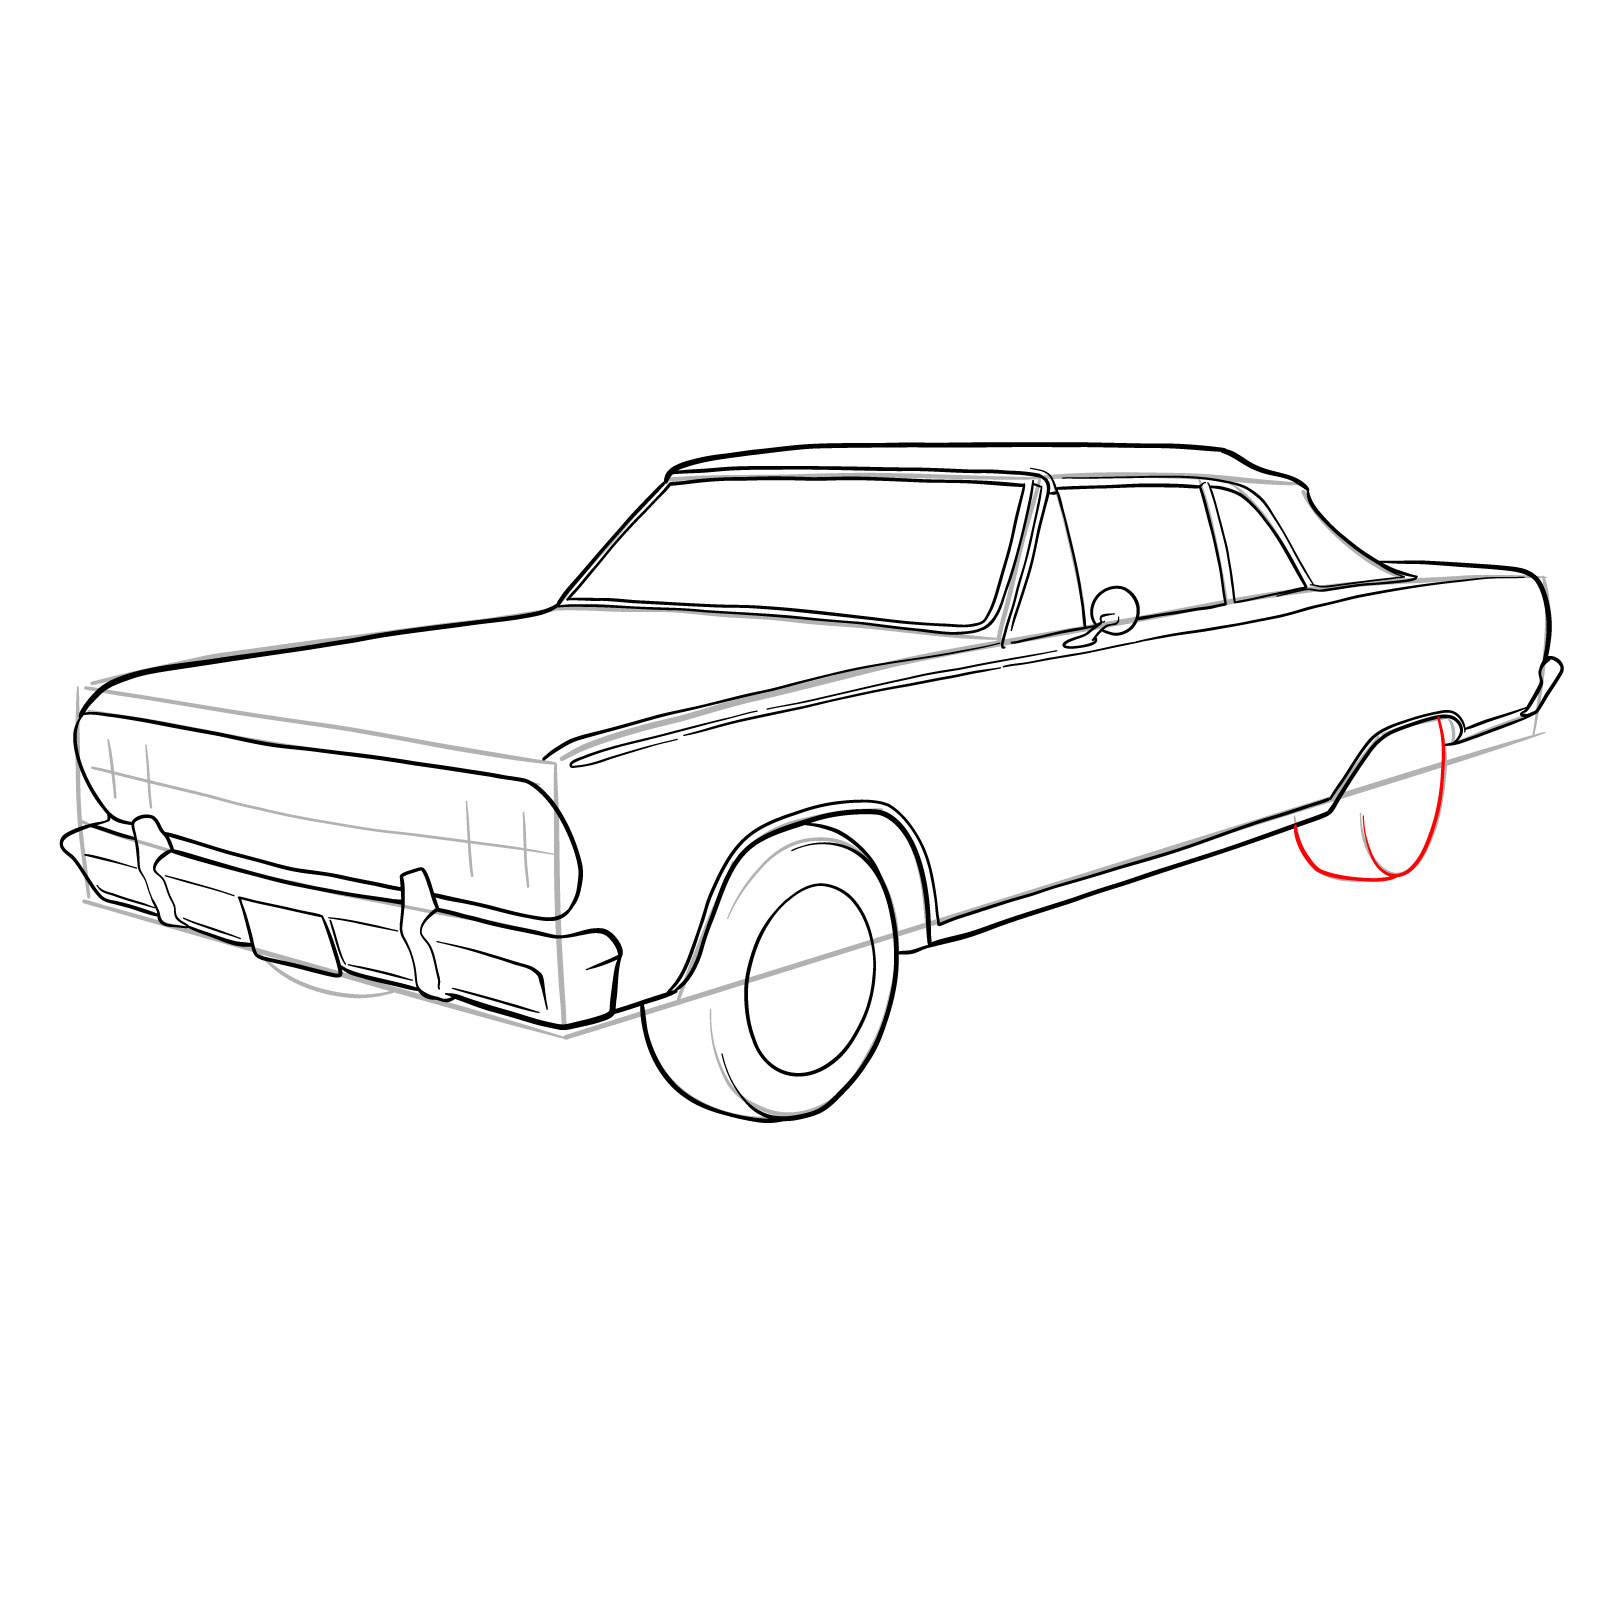 How to draw 1964 Chevrolet Malibu - step 26